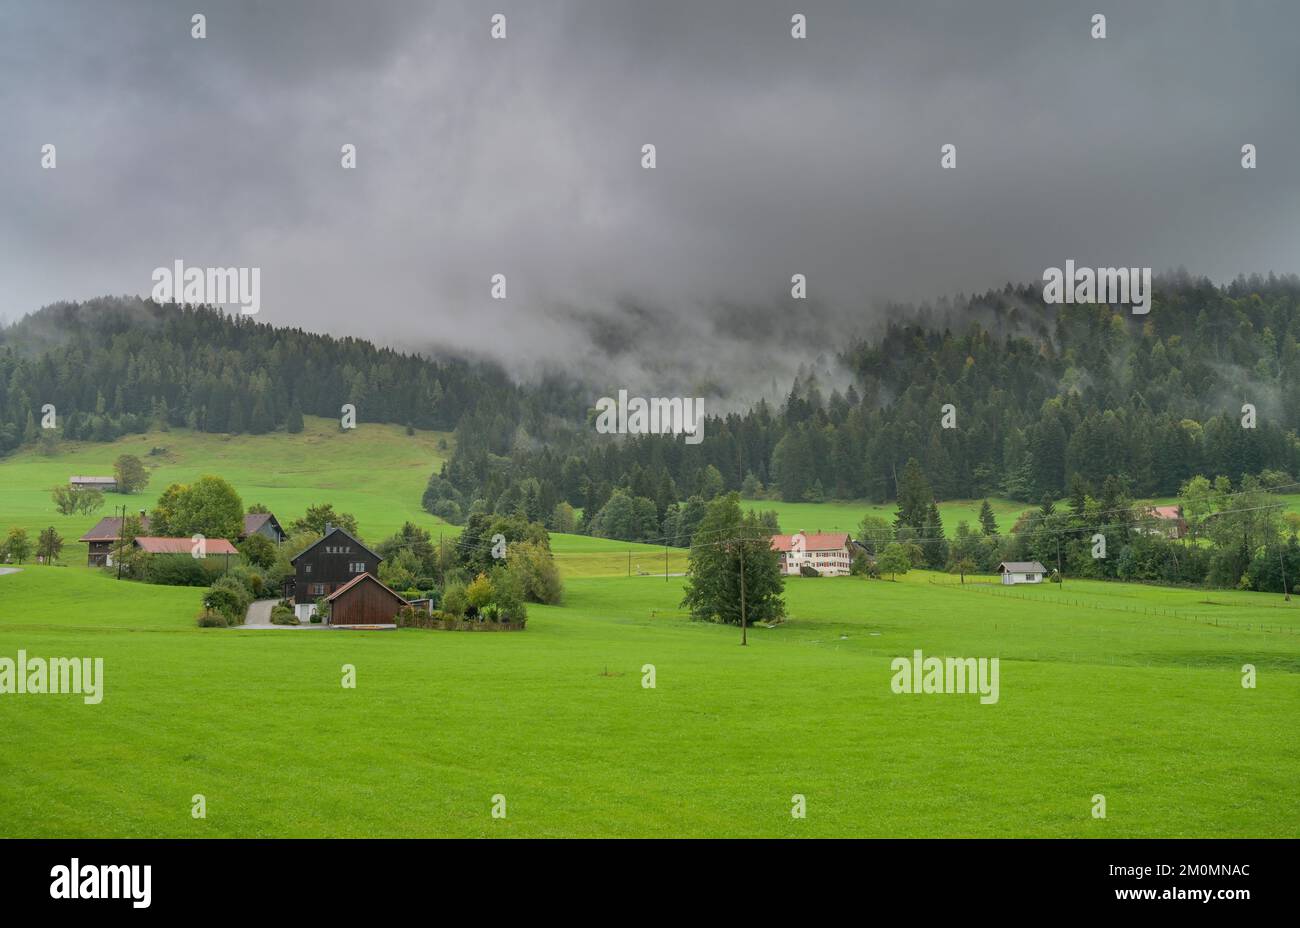 Regen, Wolken, Wiese, Nadelwald, Hagspiel, Weißachtal, Allgäu, Bayern, Deutschland Stock Photo